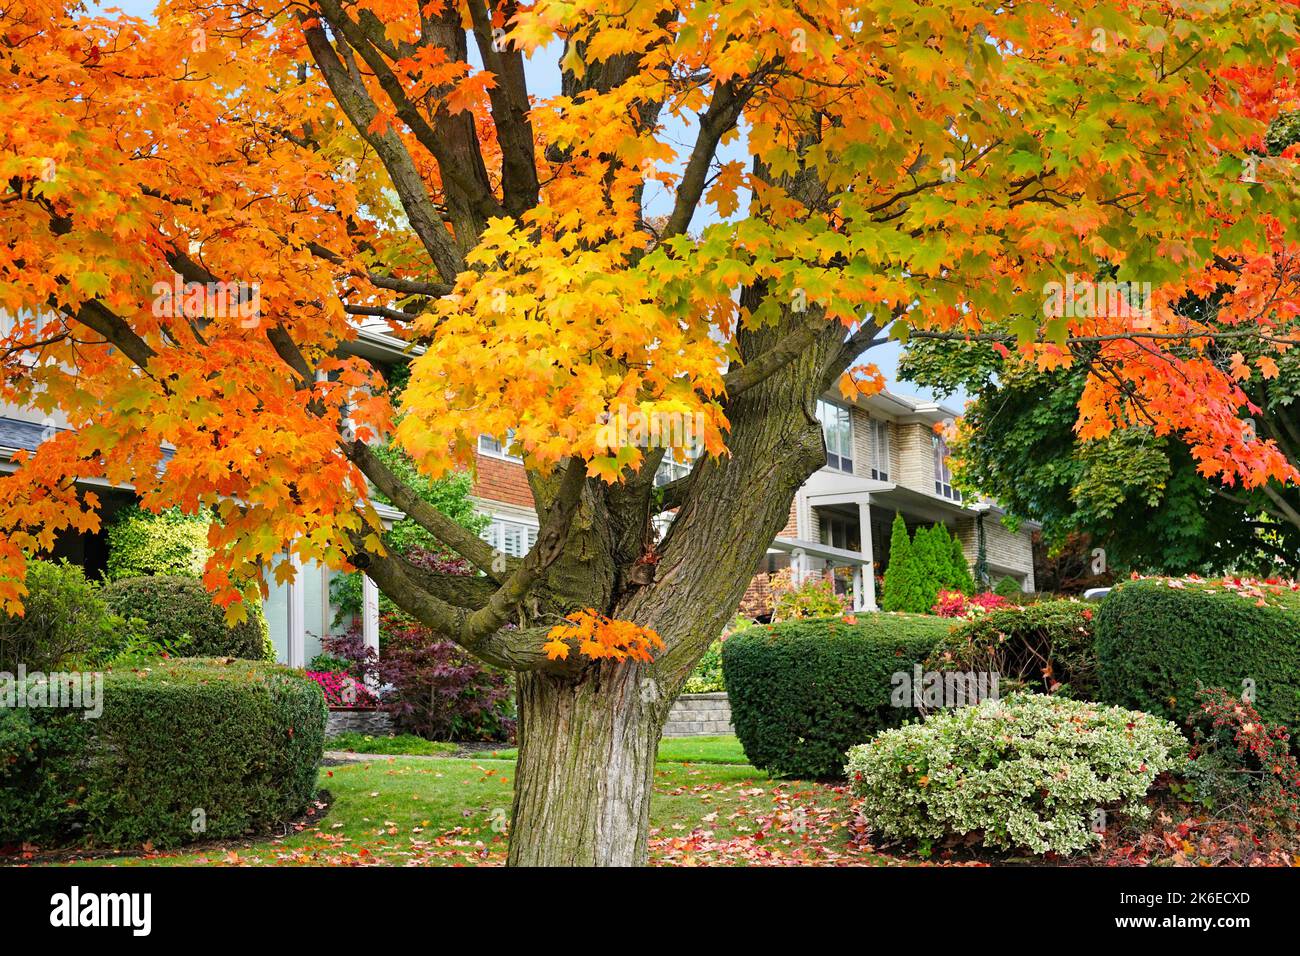 Quartier résidentiel avec érable changeant aux couleurs d'automne brillantes de rouge et jaune Banque D'Images